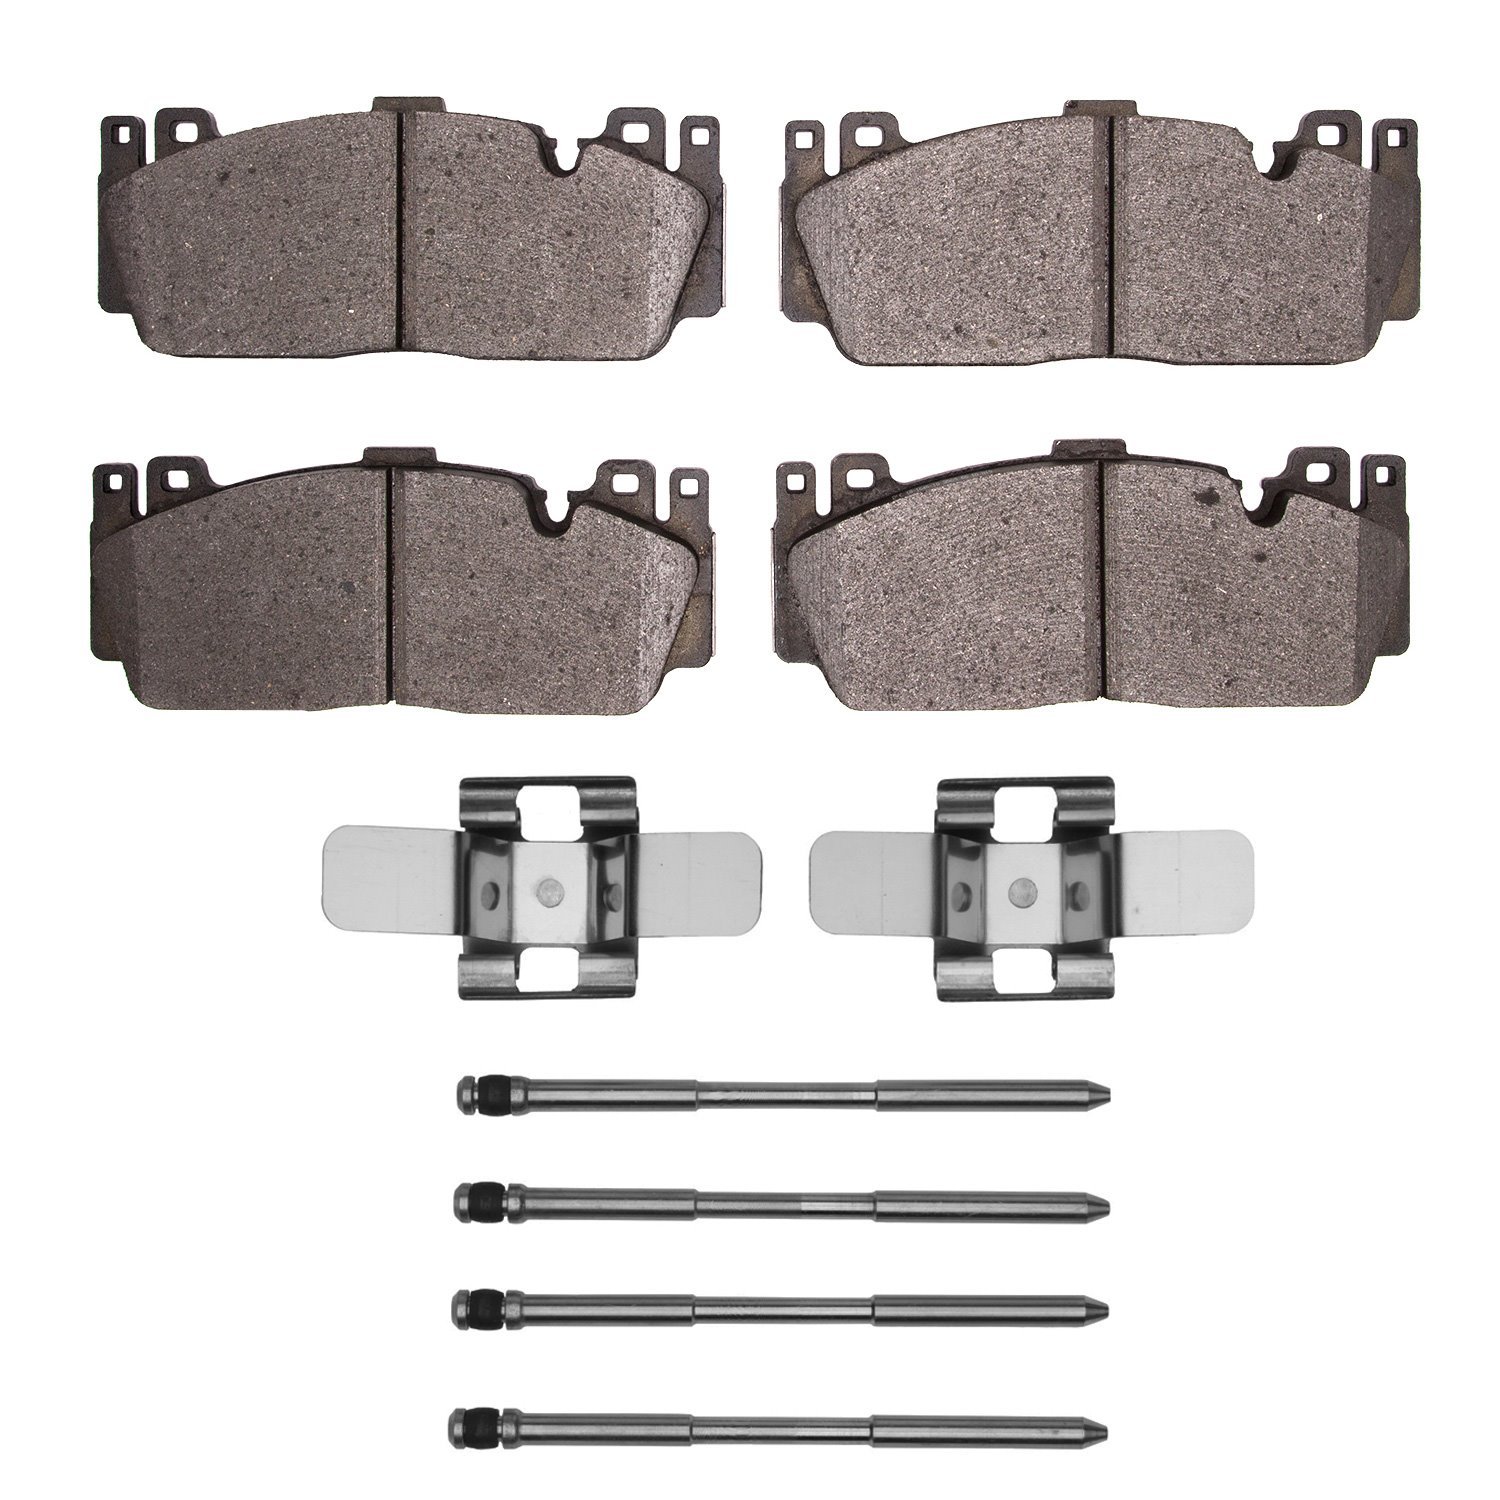 1551-1648-11 5000 Advanced Low-Metallic Brake Pads & Hardware Kit, 2015-2021 BMW, Position: Front